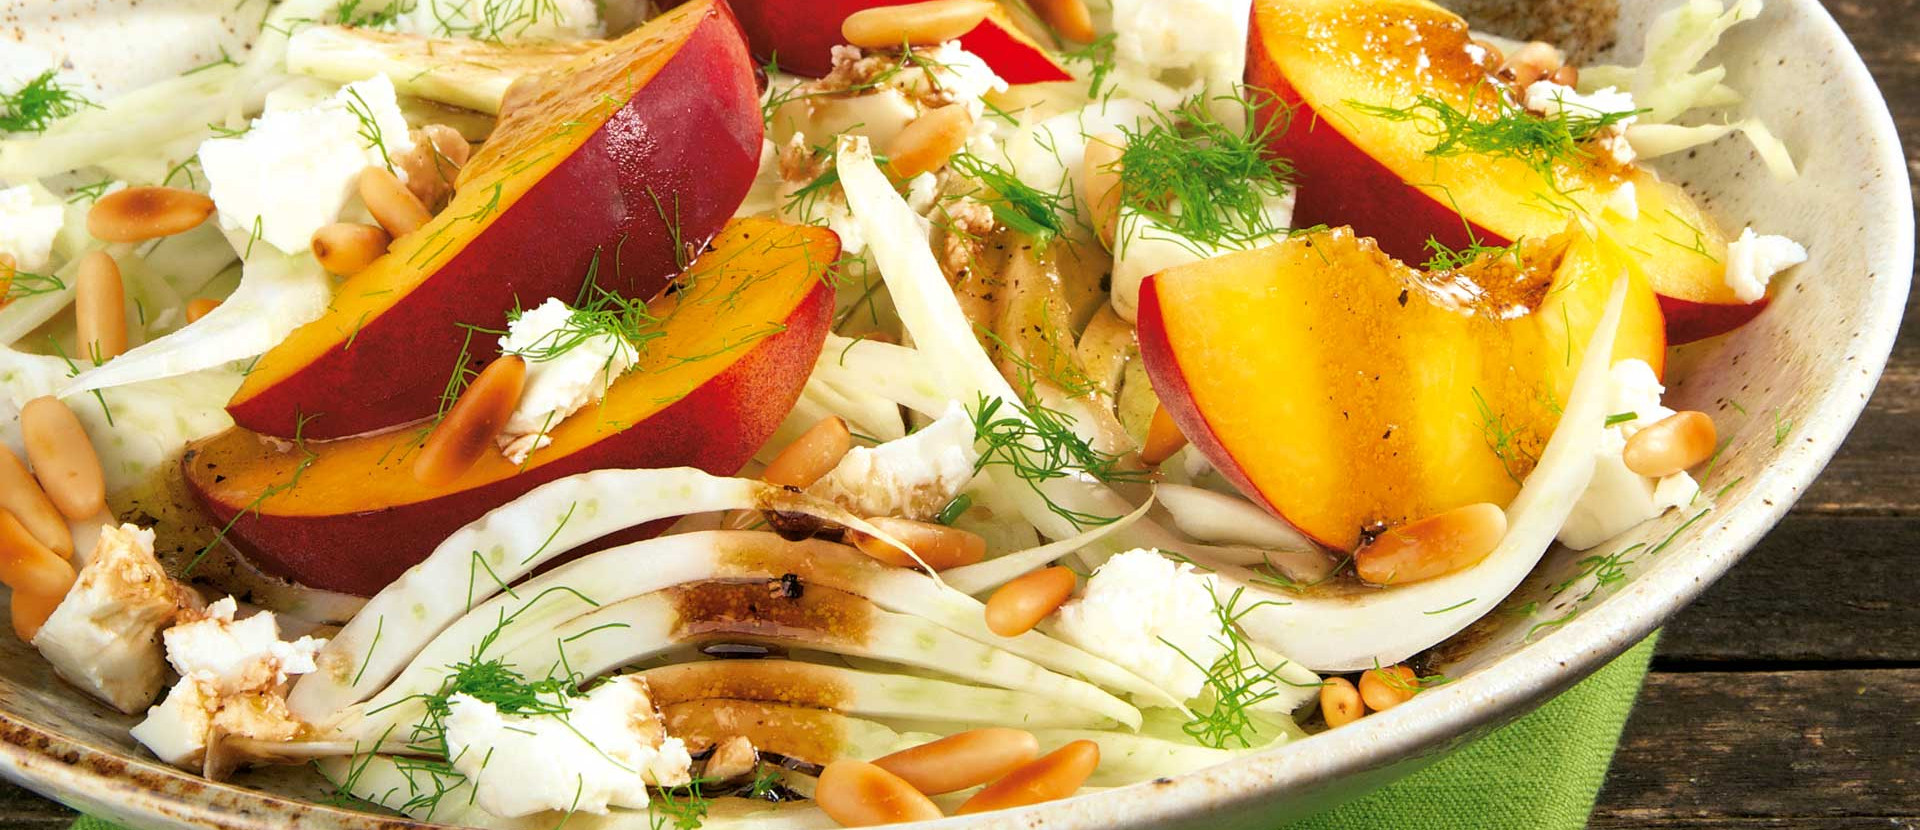 Fenchel-Pfirsich-Salat mit Feta und Pinienkernen